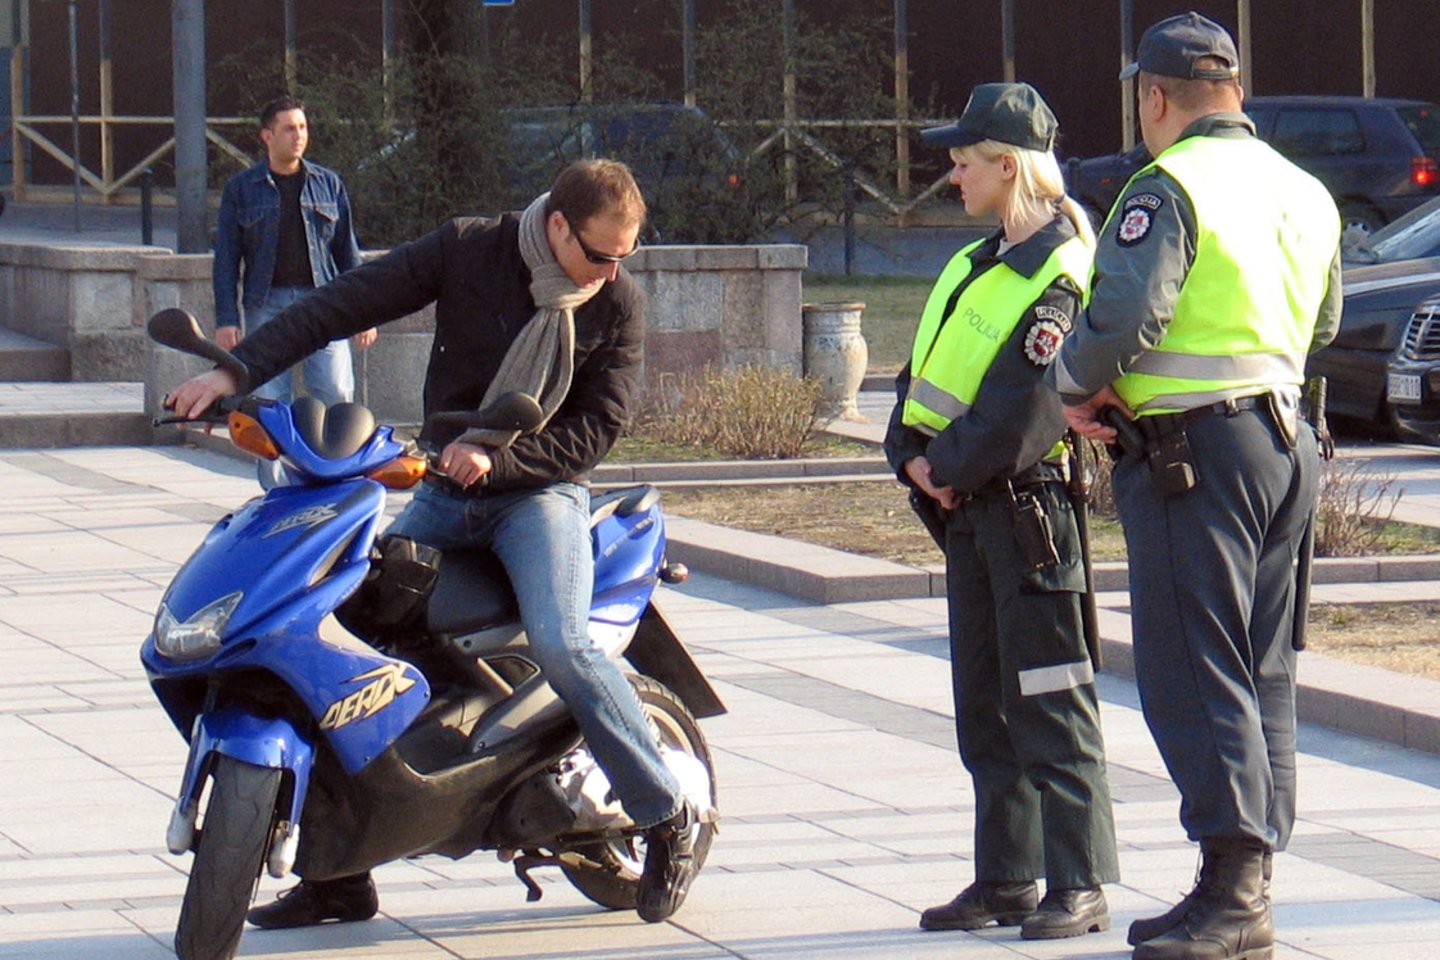 Nuo 2021 m. rugpjūčio 1 d. vairuotojai, turintys B kategorijos vairuotojo pažymėjimą, gali supaprastinta tvarka įgyti teisę tik Lietuvos teritorijoje vairuoti lengvuosius motociklus.<br>V.Kapočiaus nuotr.